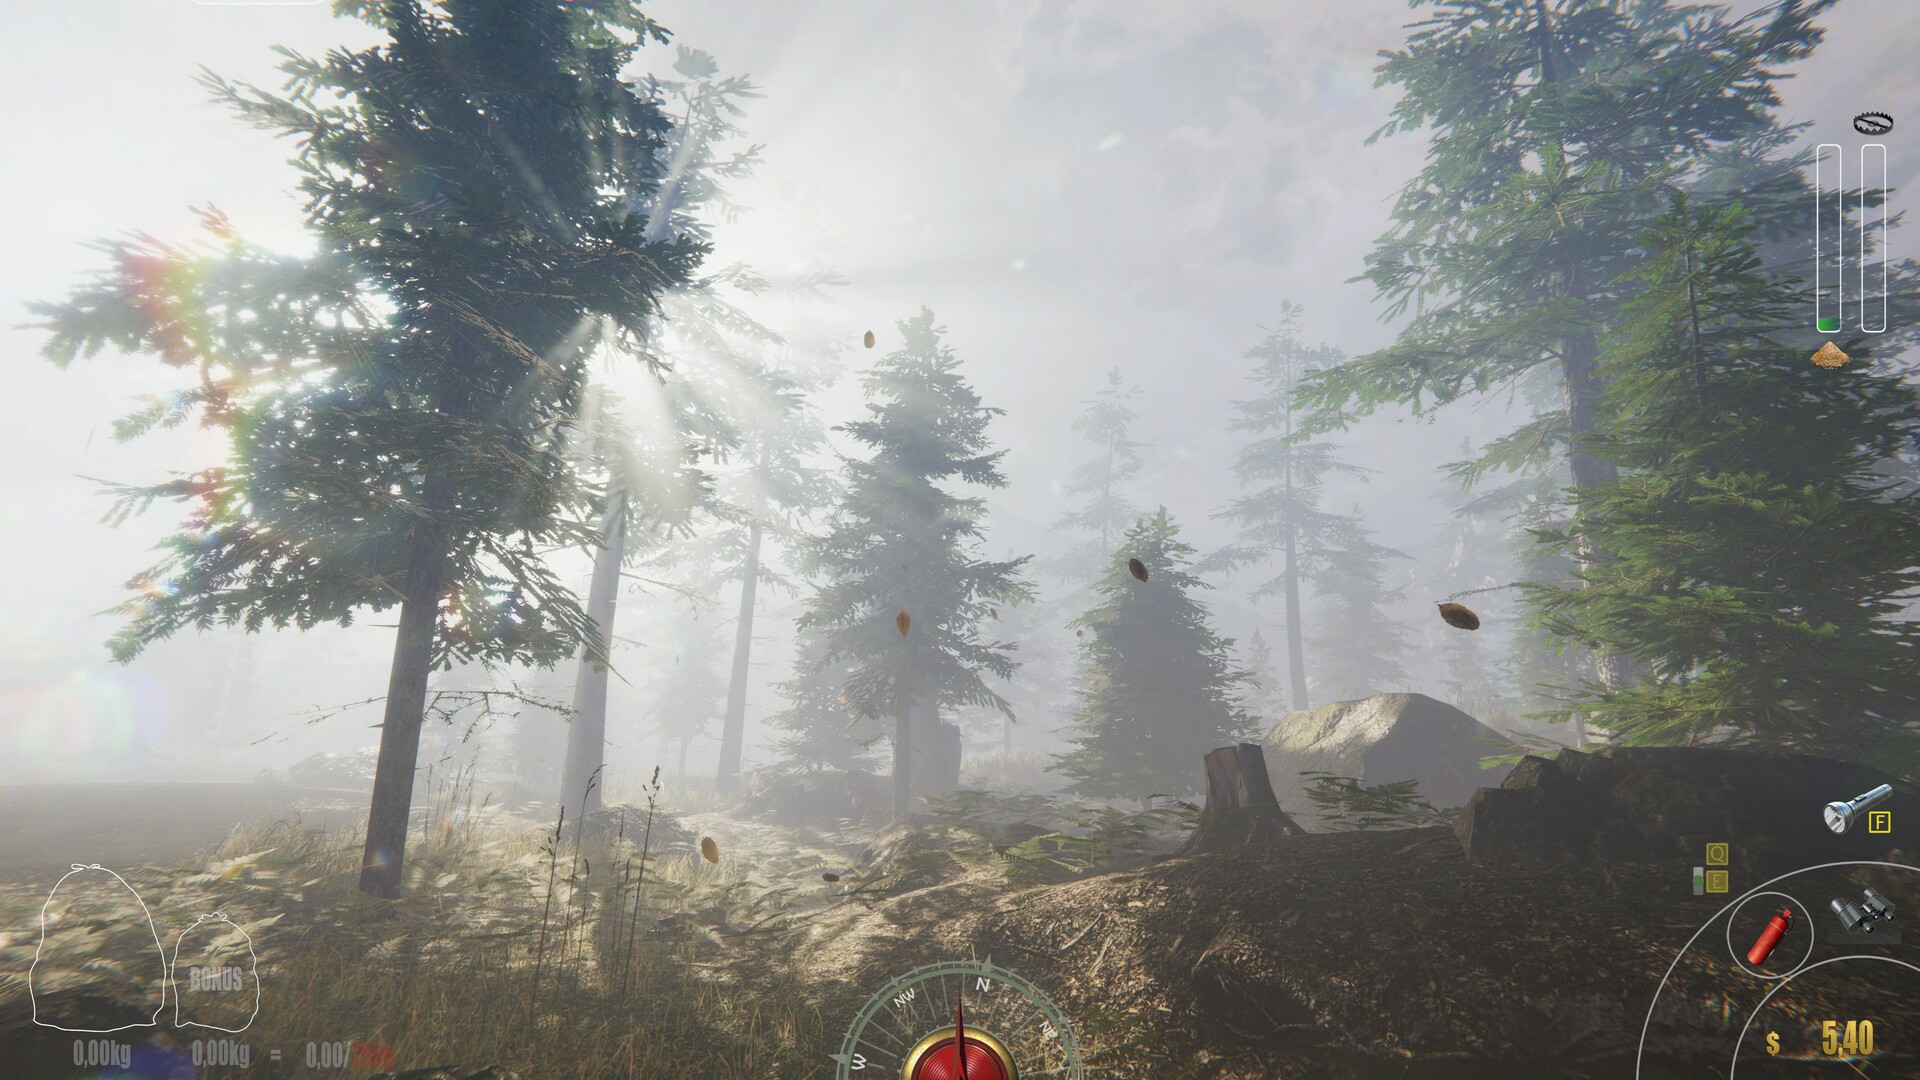 《森林管理员模拟器》试玩Demo上线 第二季度发售